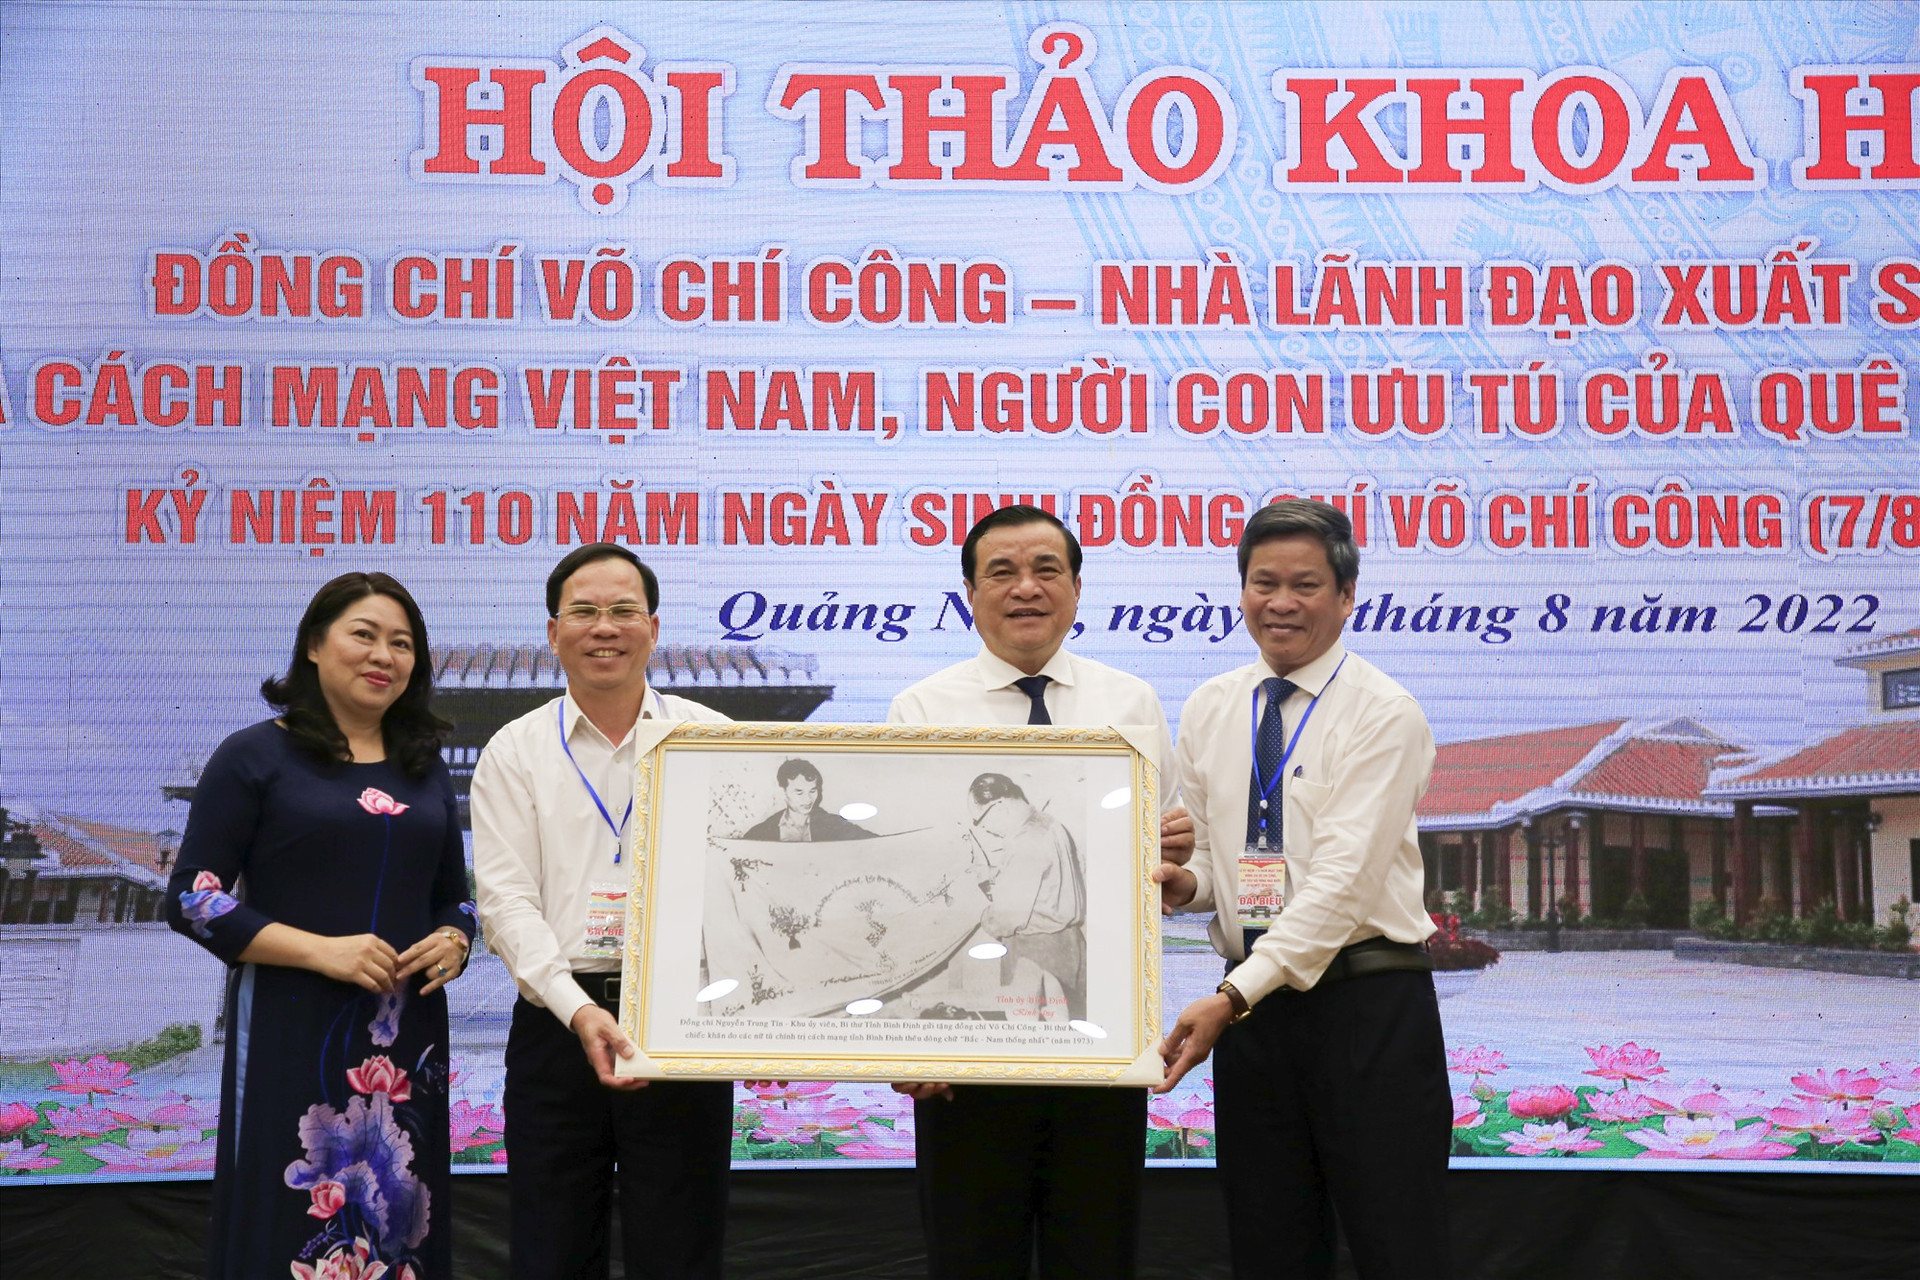 Lãnh đạo Ban Tuyên giáo Tỉnh ủy Bình Định trao tặng bức ảnh về đồng chí Võ Chí Công cho Tỉnh ủy sáng 6.8. Ảnh: P.V